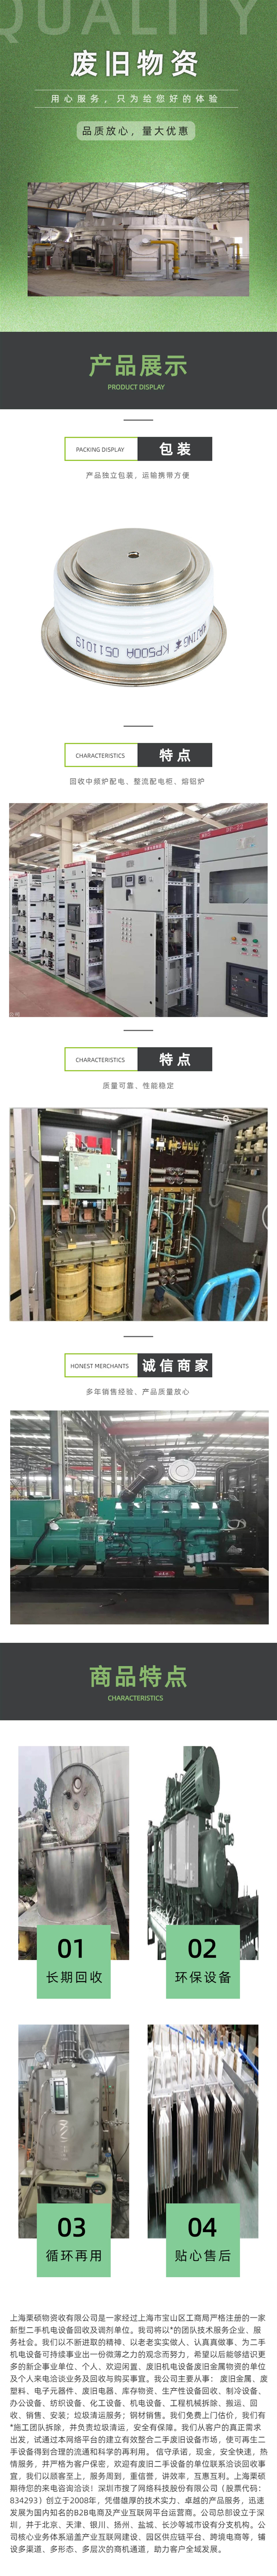 南京电动机回收 二手电动机回收 南京废旧电动机回收公司